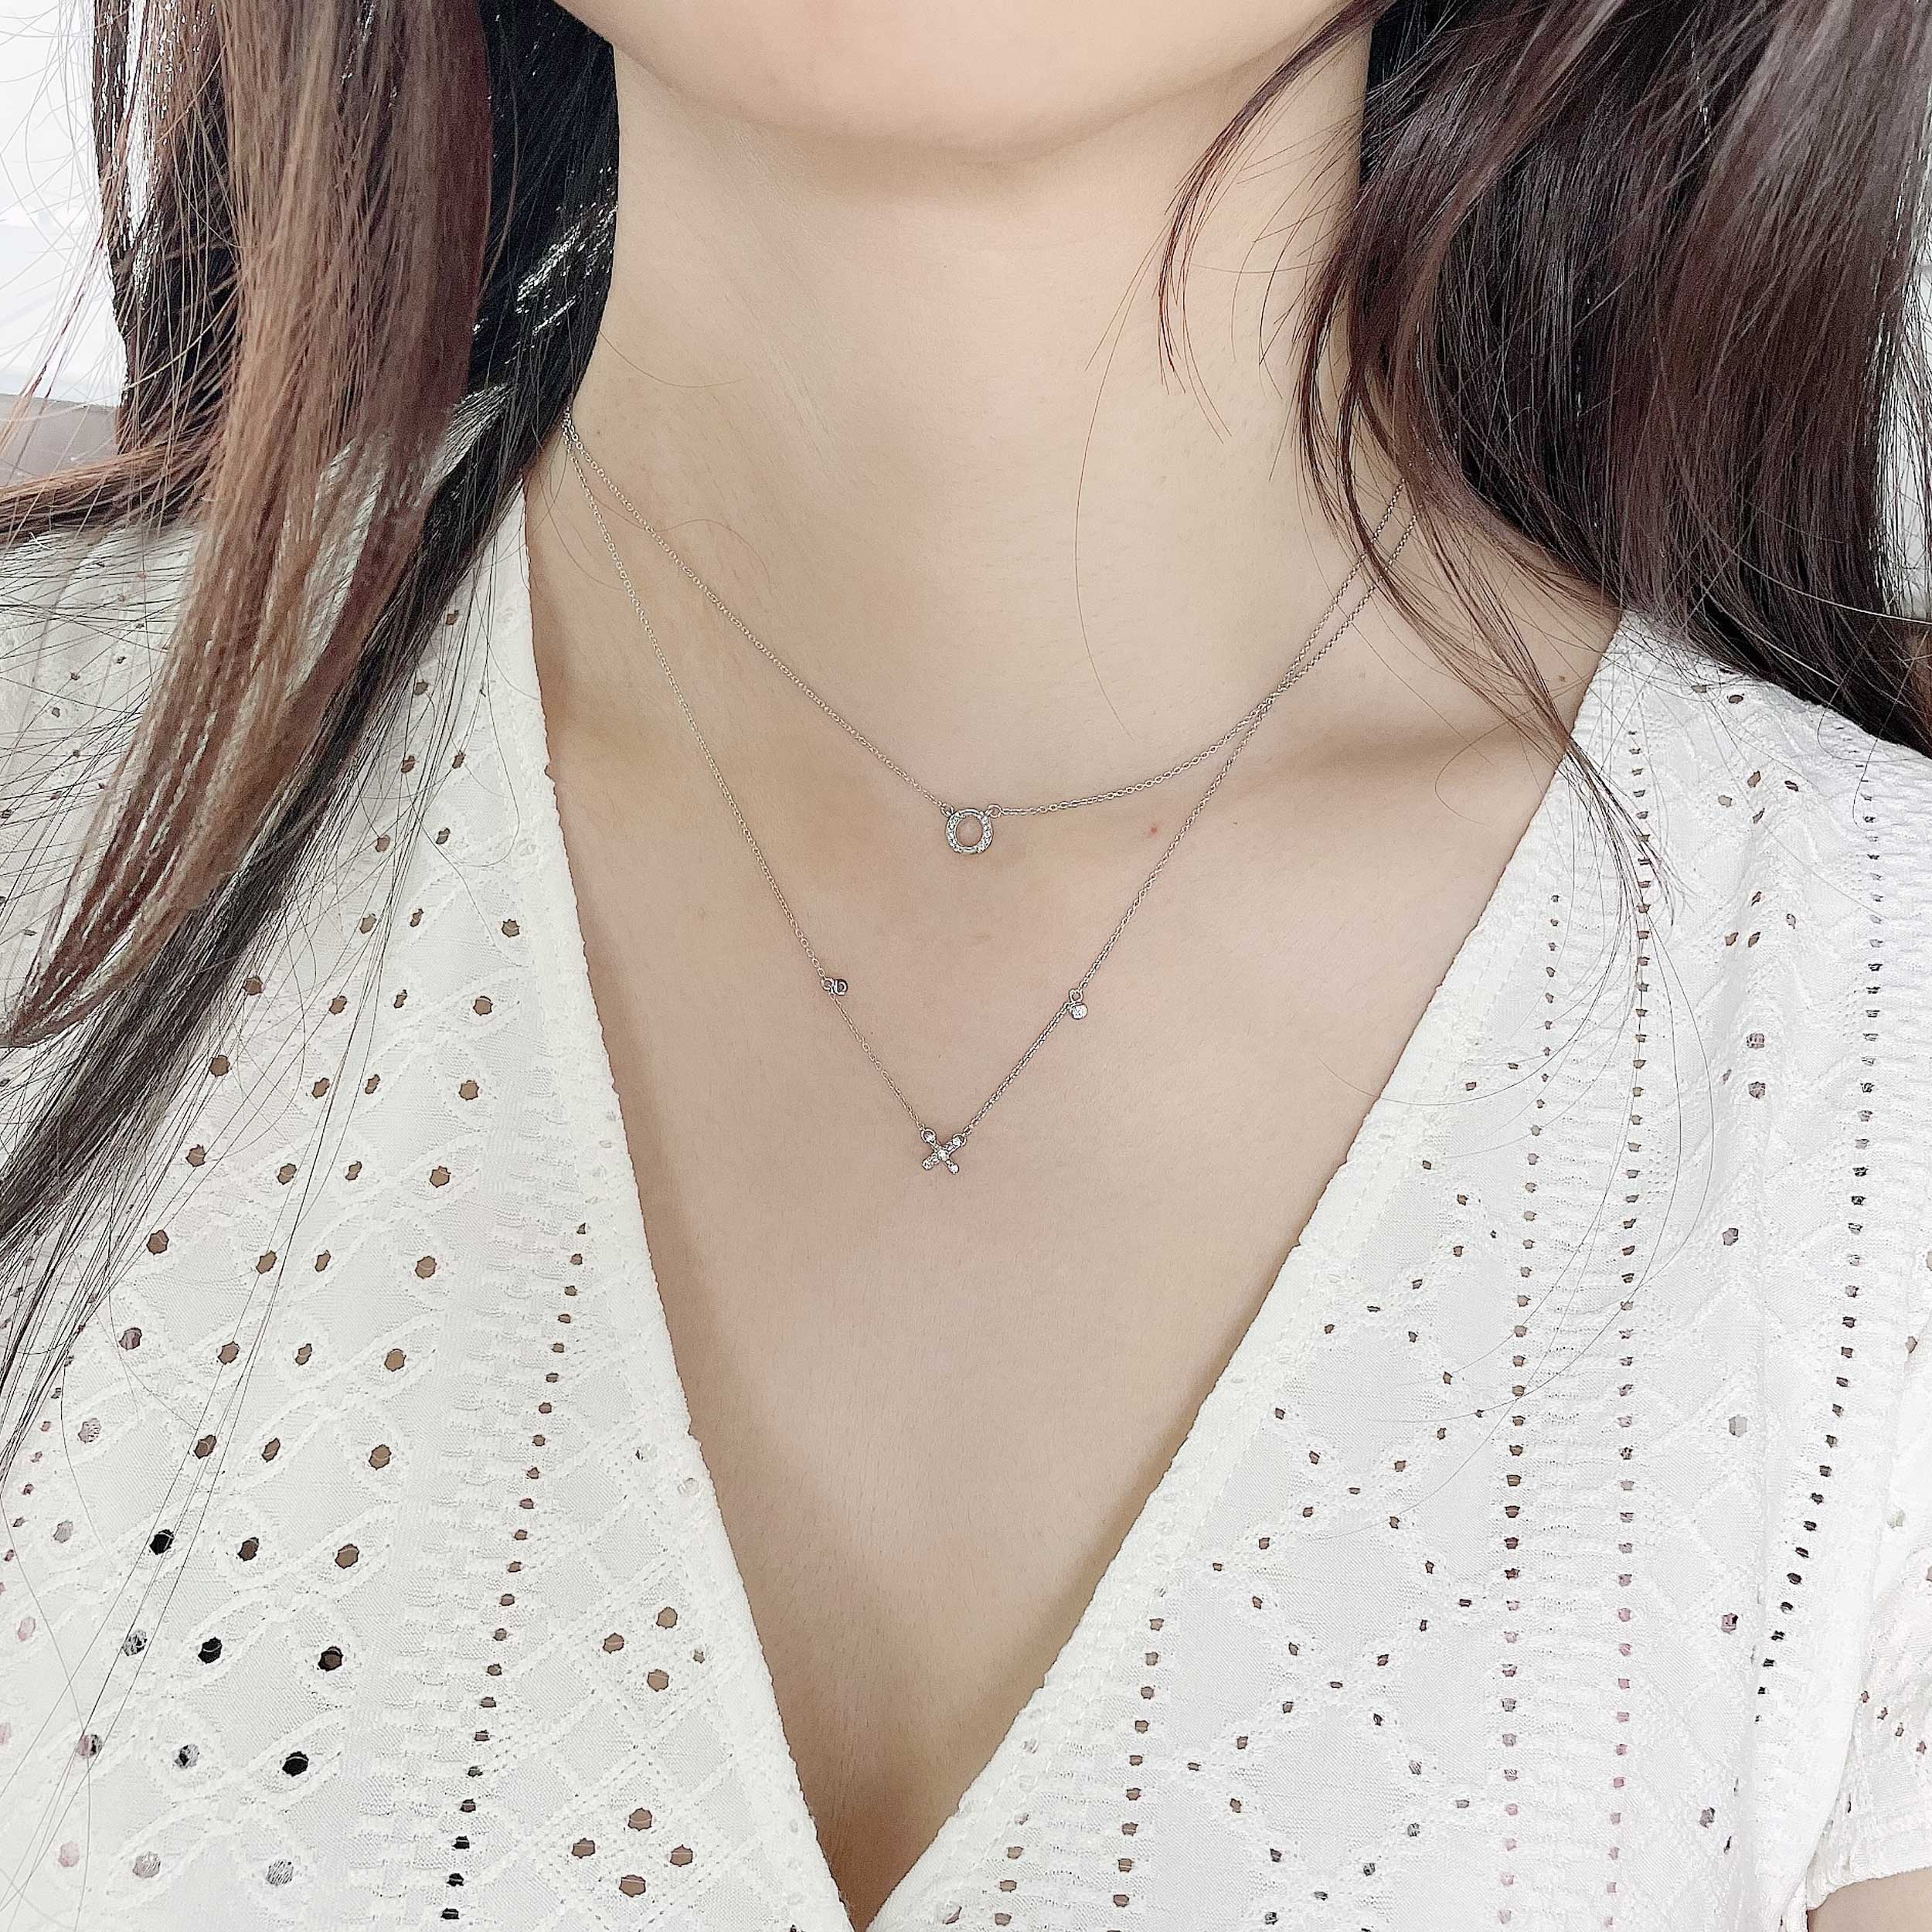 Shop 10 Carat Diamond Heart Necklace | Carbon & Hyde